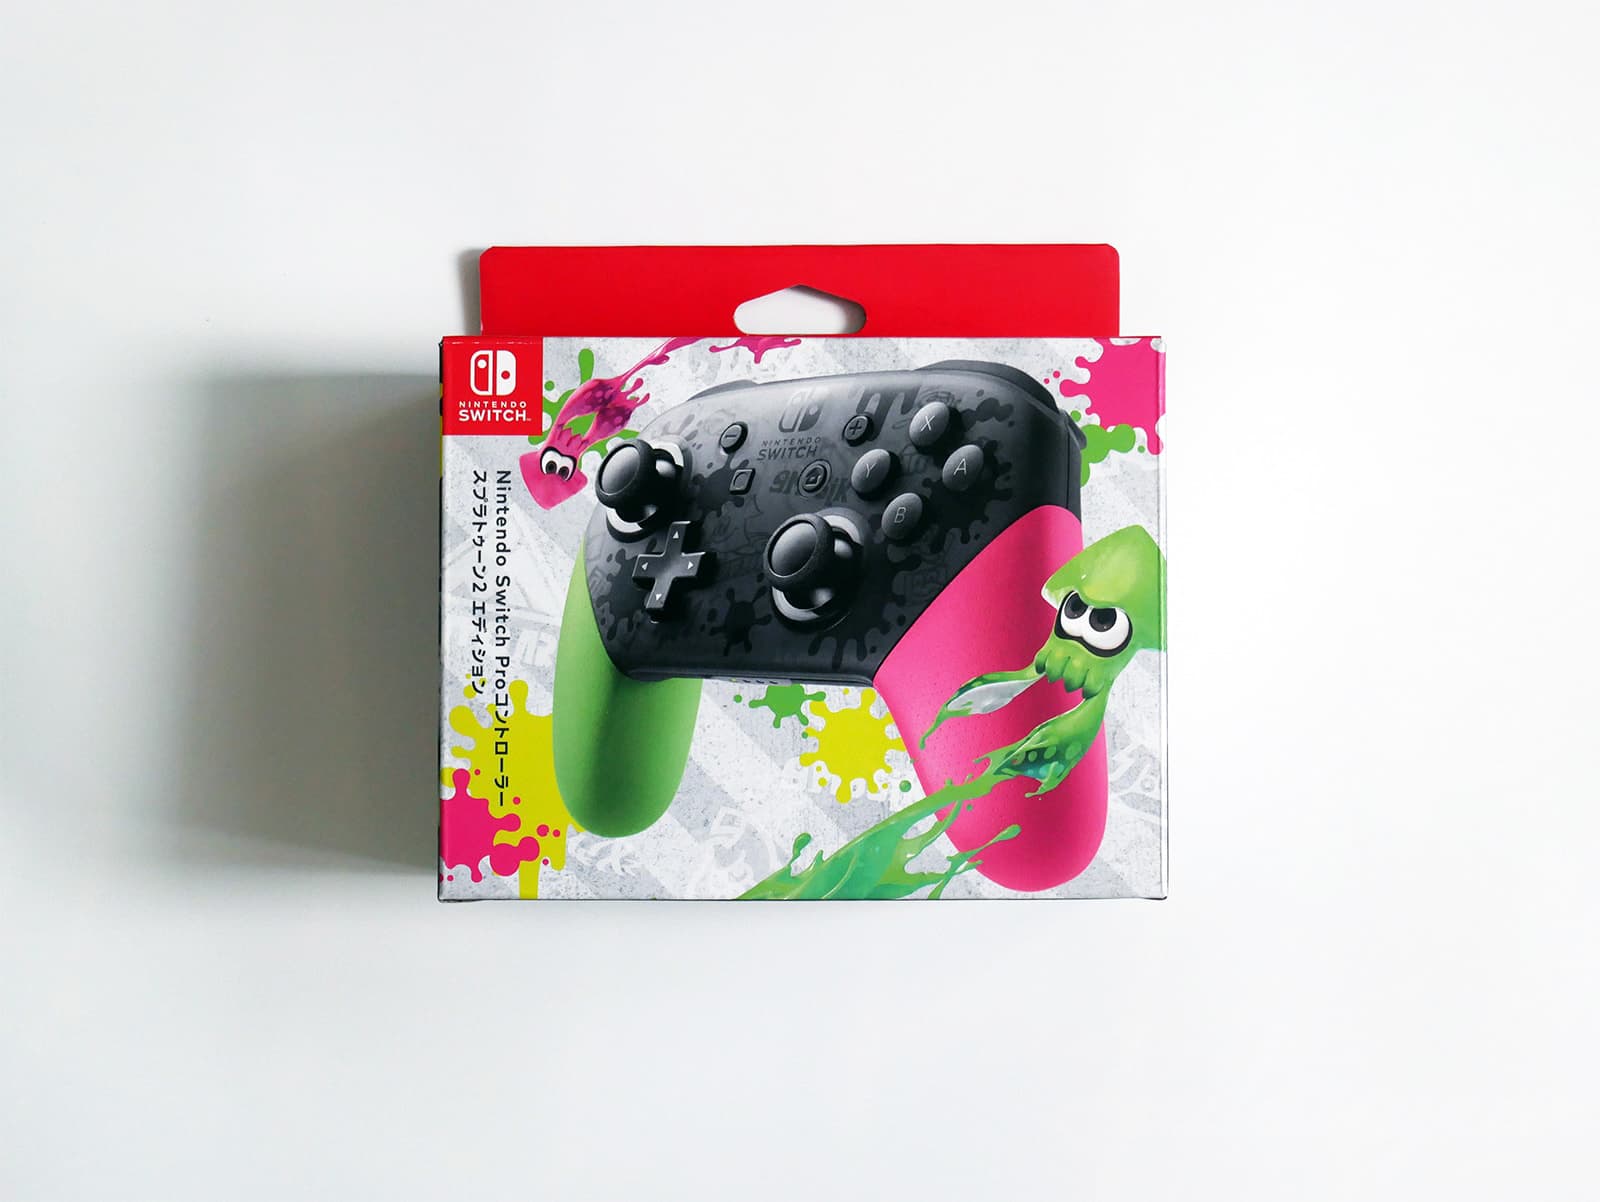 Nintendo Switch Proコントローラー
スプラトゥーン2 エディション外箱